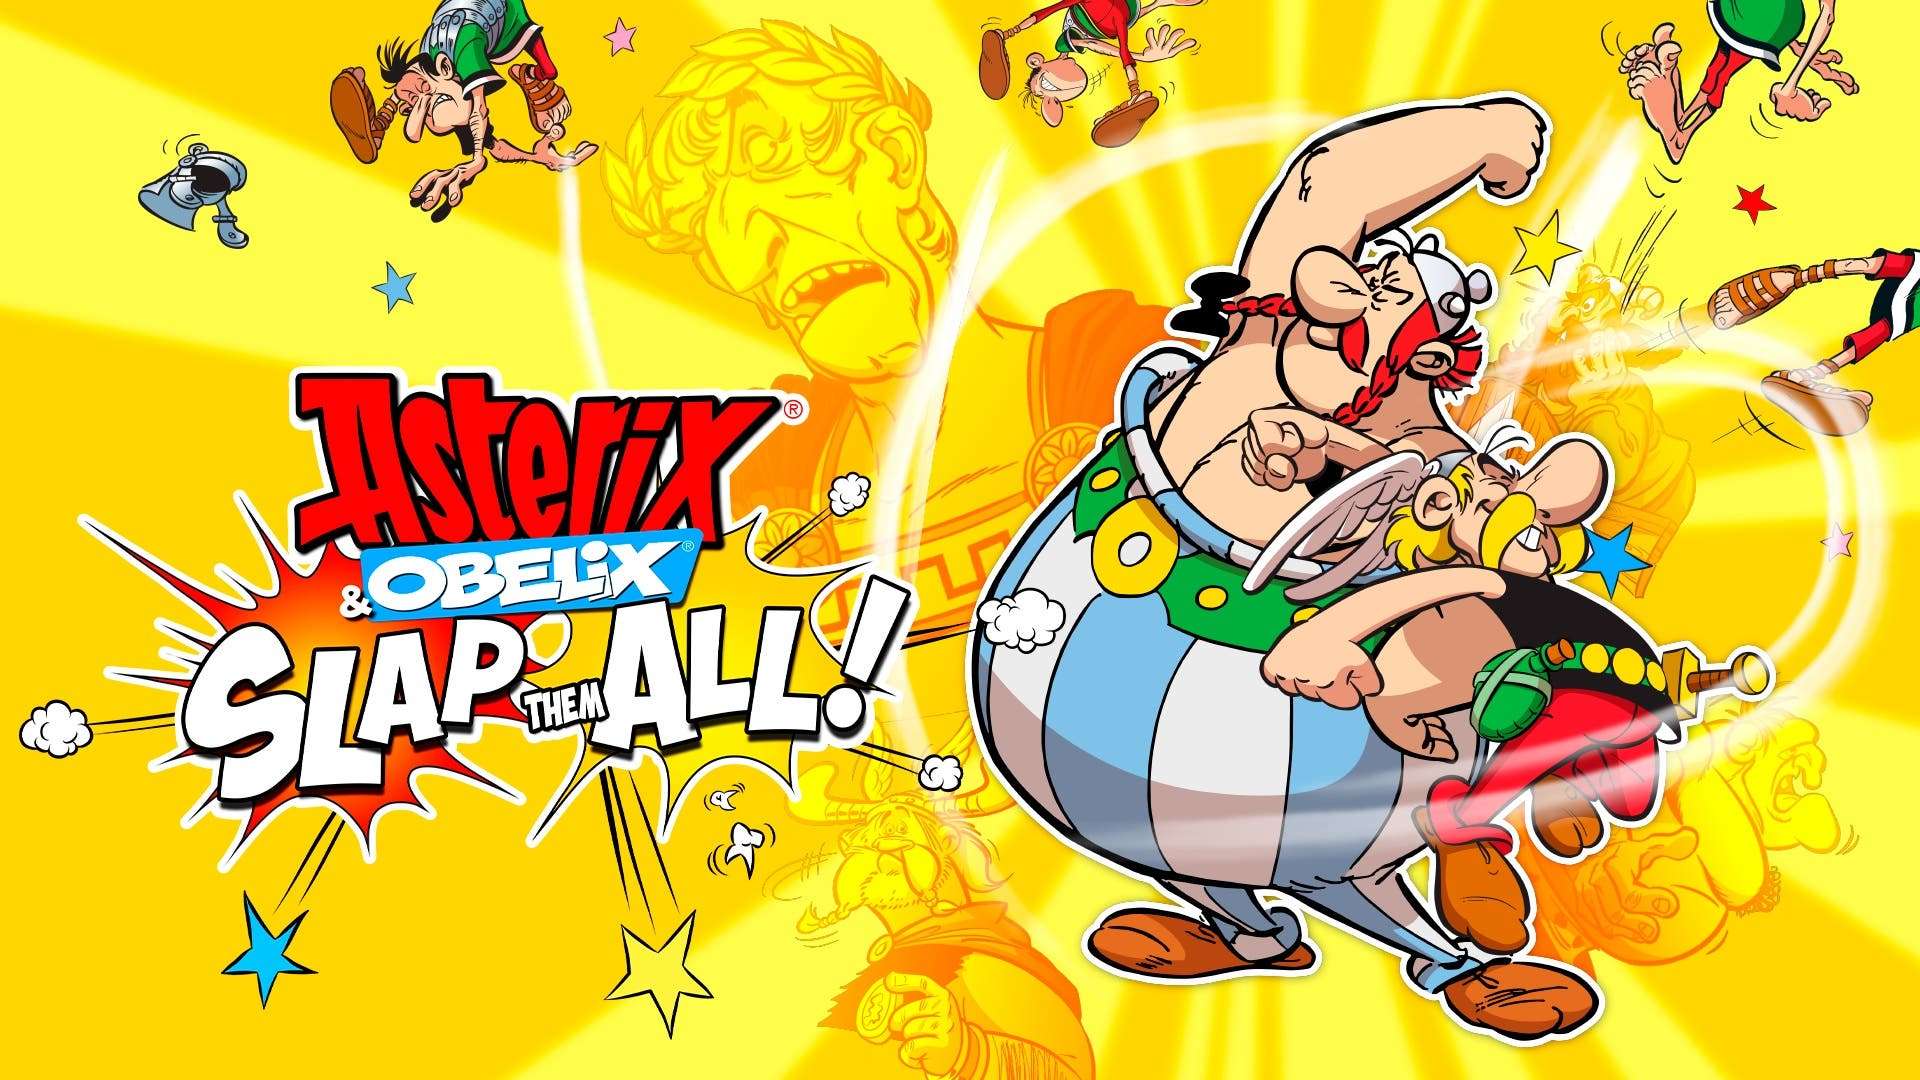 Asterix & Obelix: Slap Them All anuncia su fecha de lanzamiento